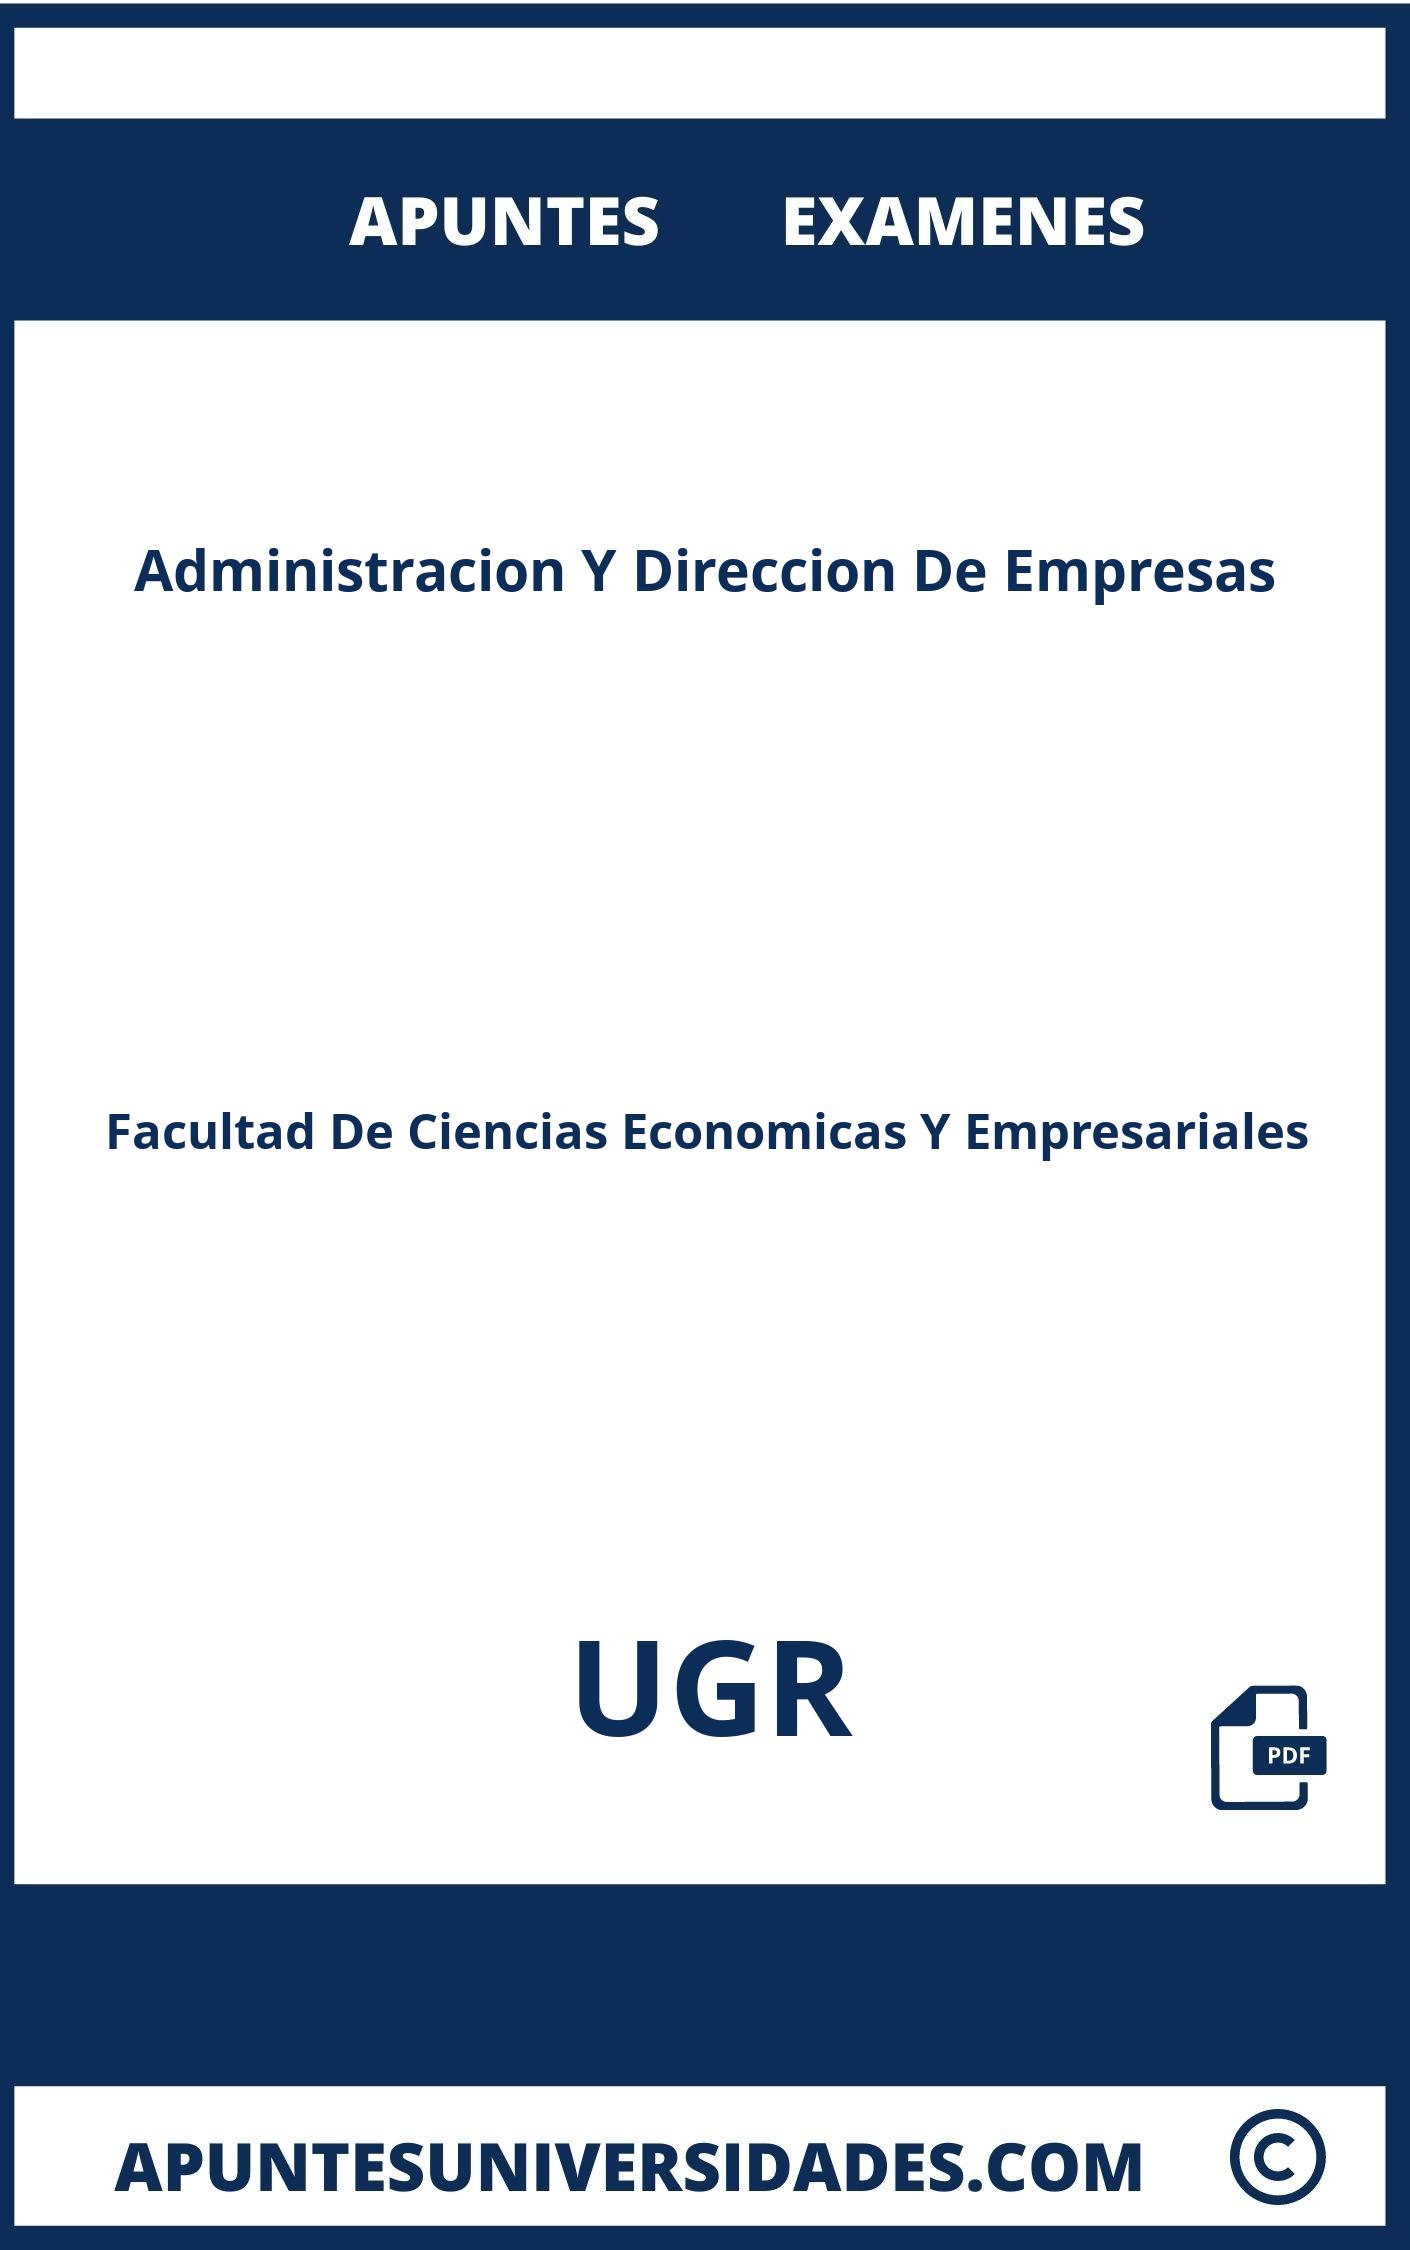 Administracion Y Direccion De Empresas UGR Apuntes Examenes